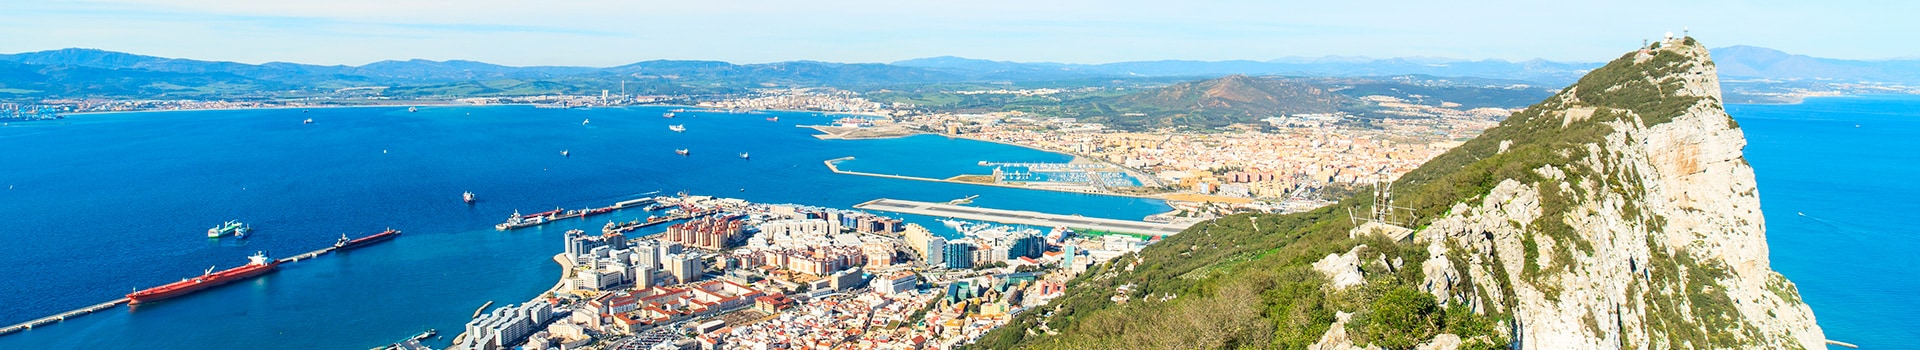 Bilbao - Gibraltar